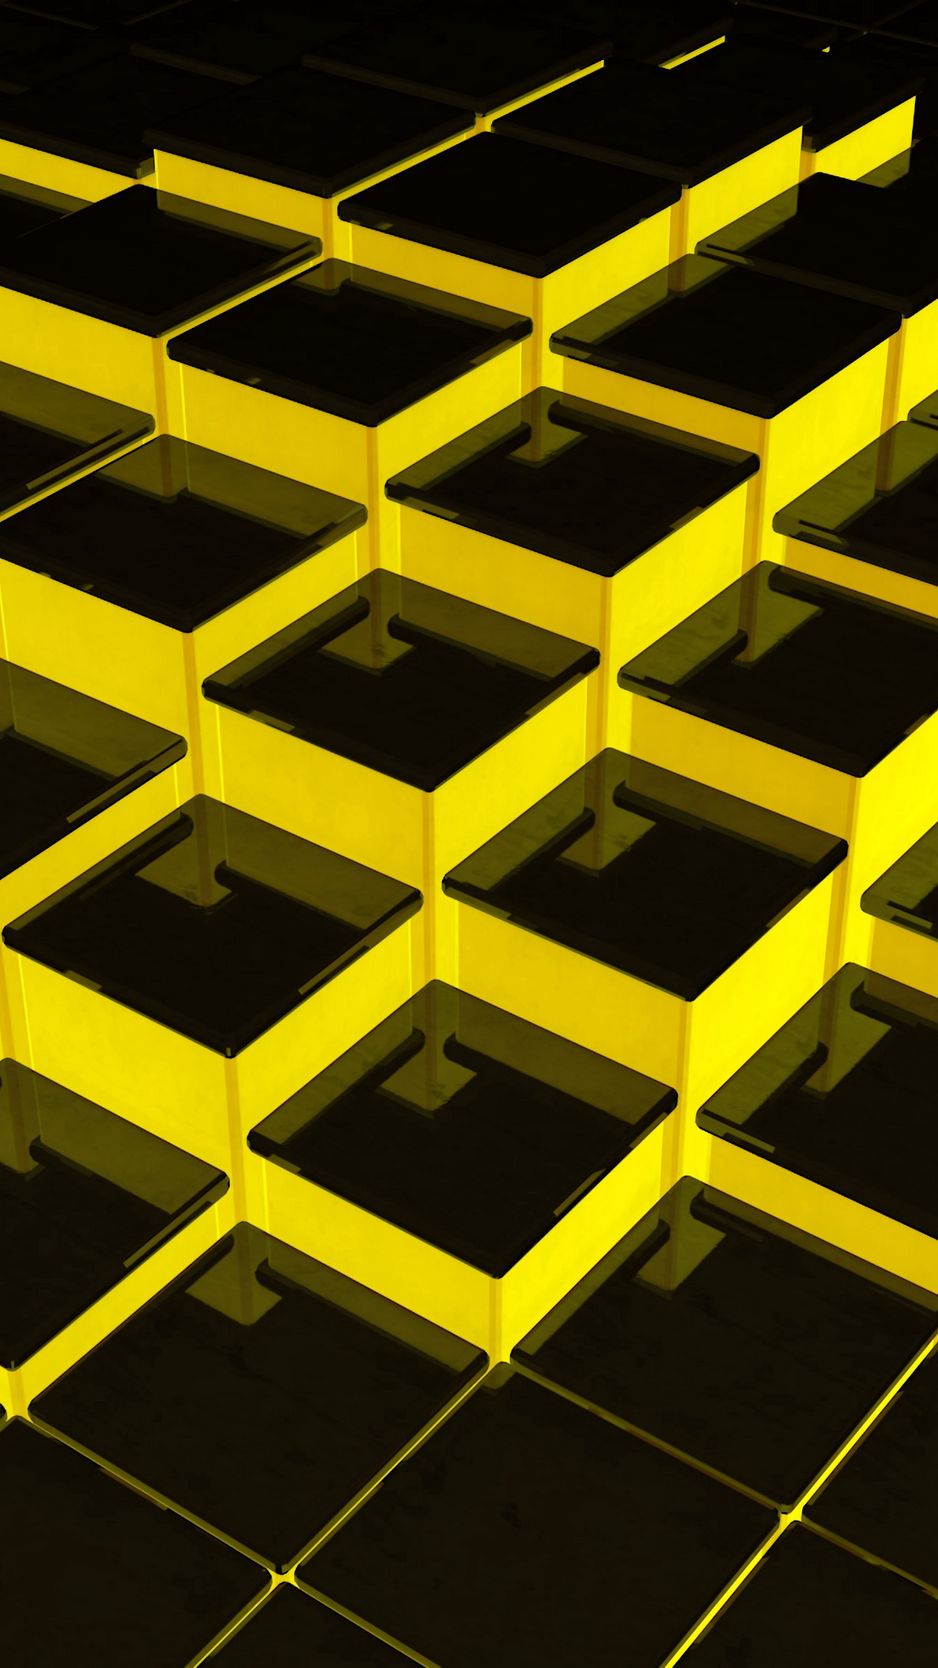 Với hình nền 938x1668 cấu trúc, khối, 3d, màu vàng, đen này, bạn sẽ được trải nghiệm một không gian trừu tượng và độc đáo. Sự kết hợp của màu đen và vàng tạo nên một sự khác biệt và hấp dẫn cho hình ảnh. Cùng xem hình ảnh để cảm nhận được sự độc đáo mà nó mang lại cho màn hình của bạn.